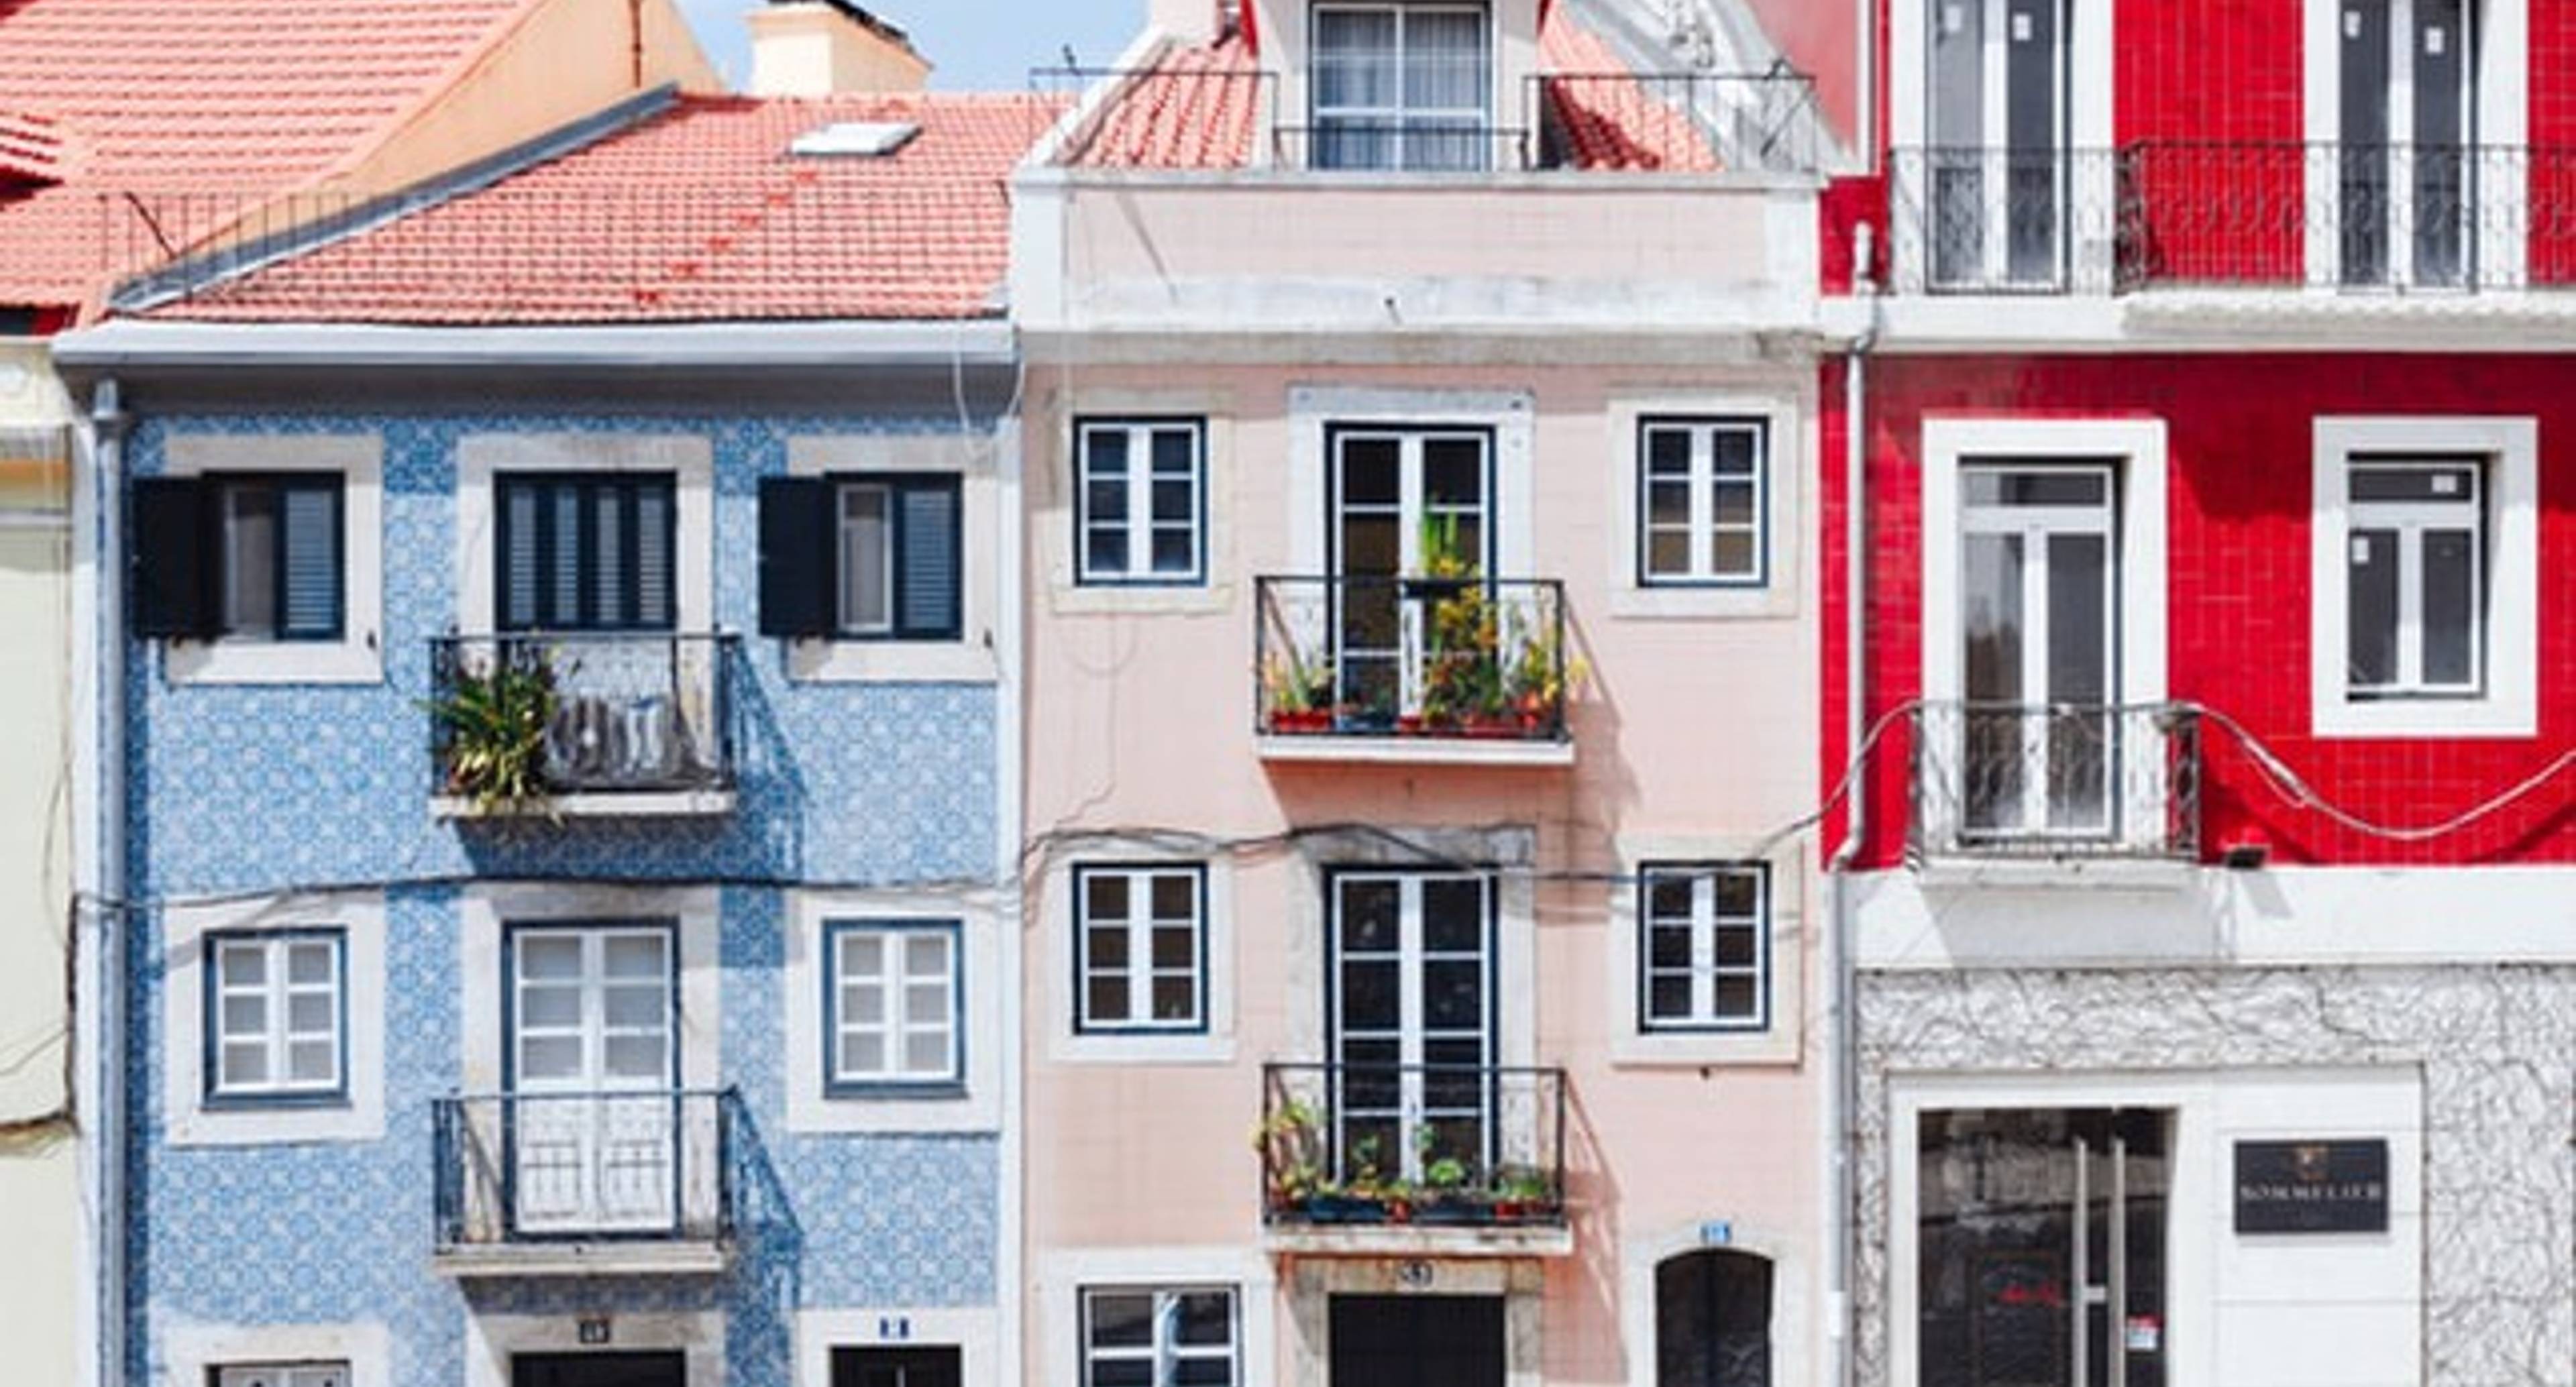 Le charme de l'architecture de Lisbonne